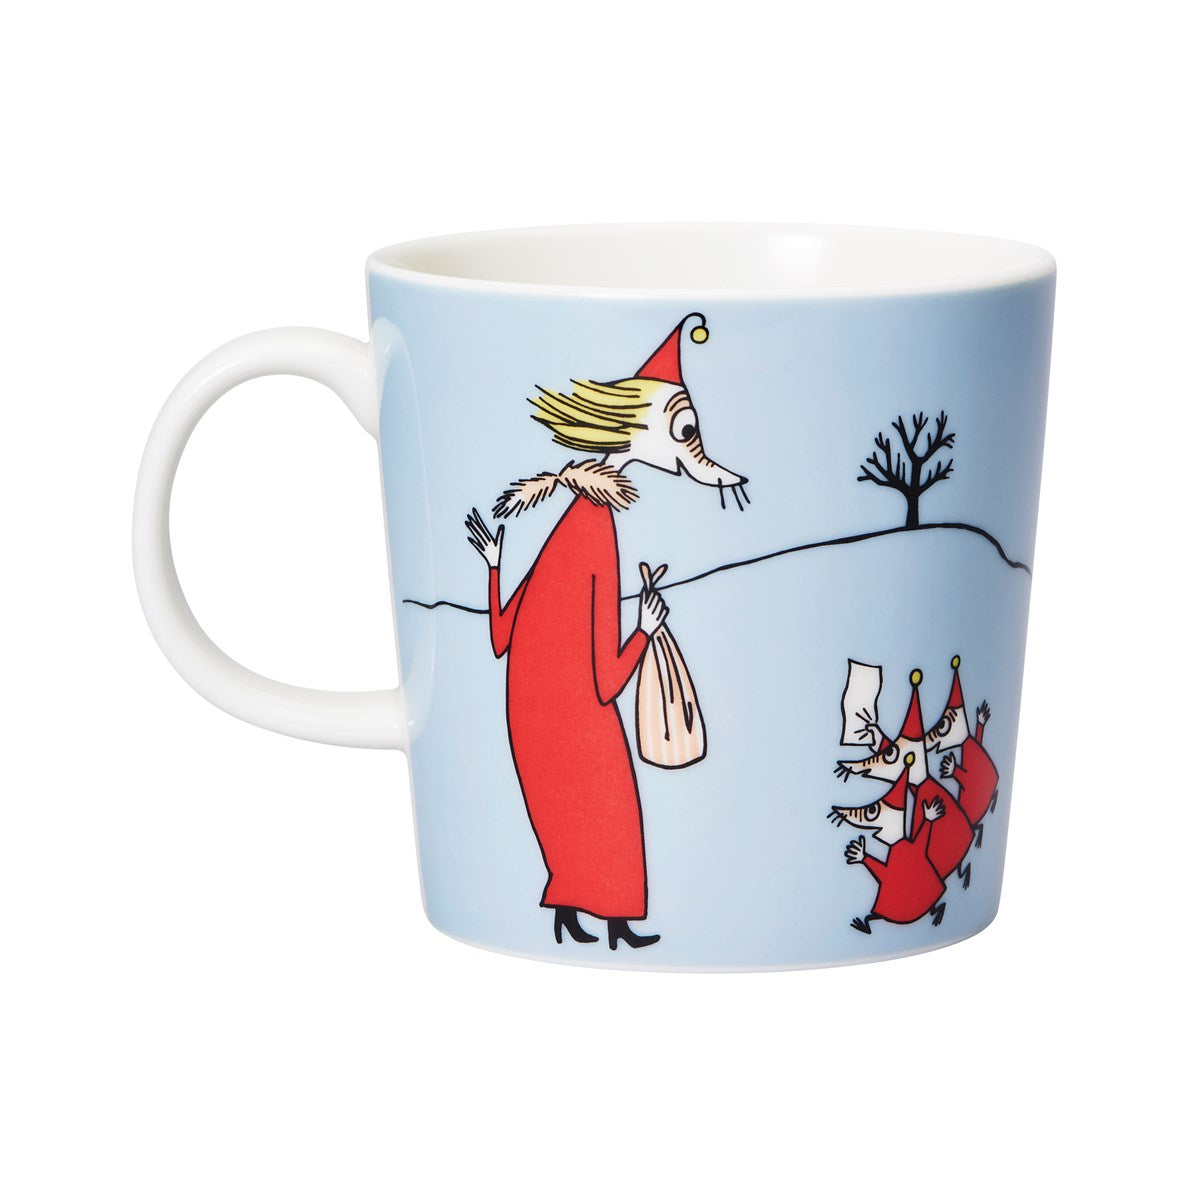 Moomin Arabia / iittala mug 300ml  / 10oz  Fillyjonk  grey mug